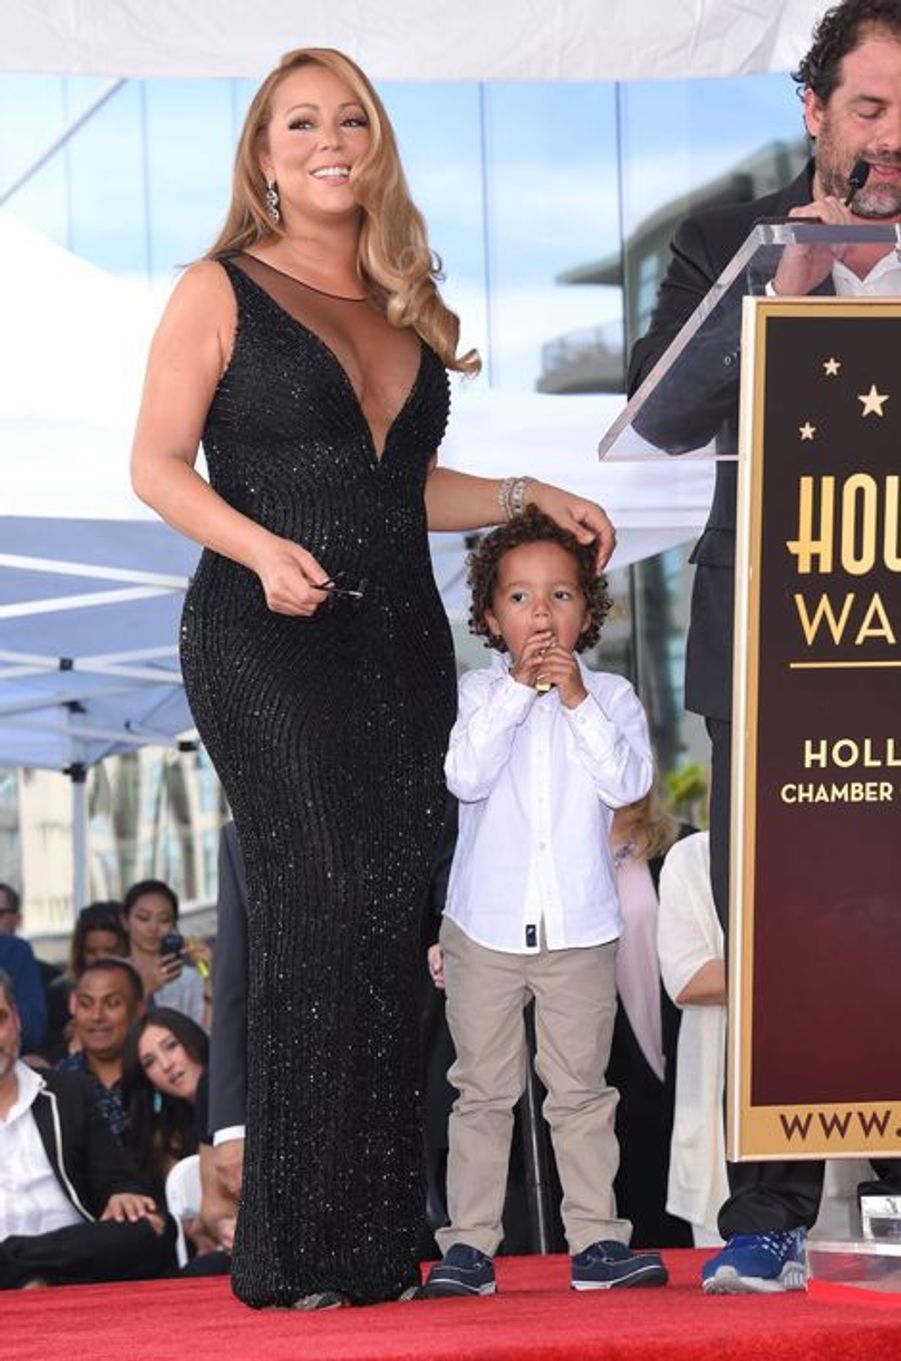 Mariah Carey Reçoit Son étoile Son Fils Moroccan Perturbe La Cérémonie 